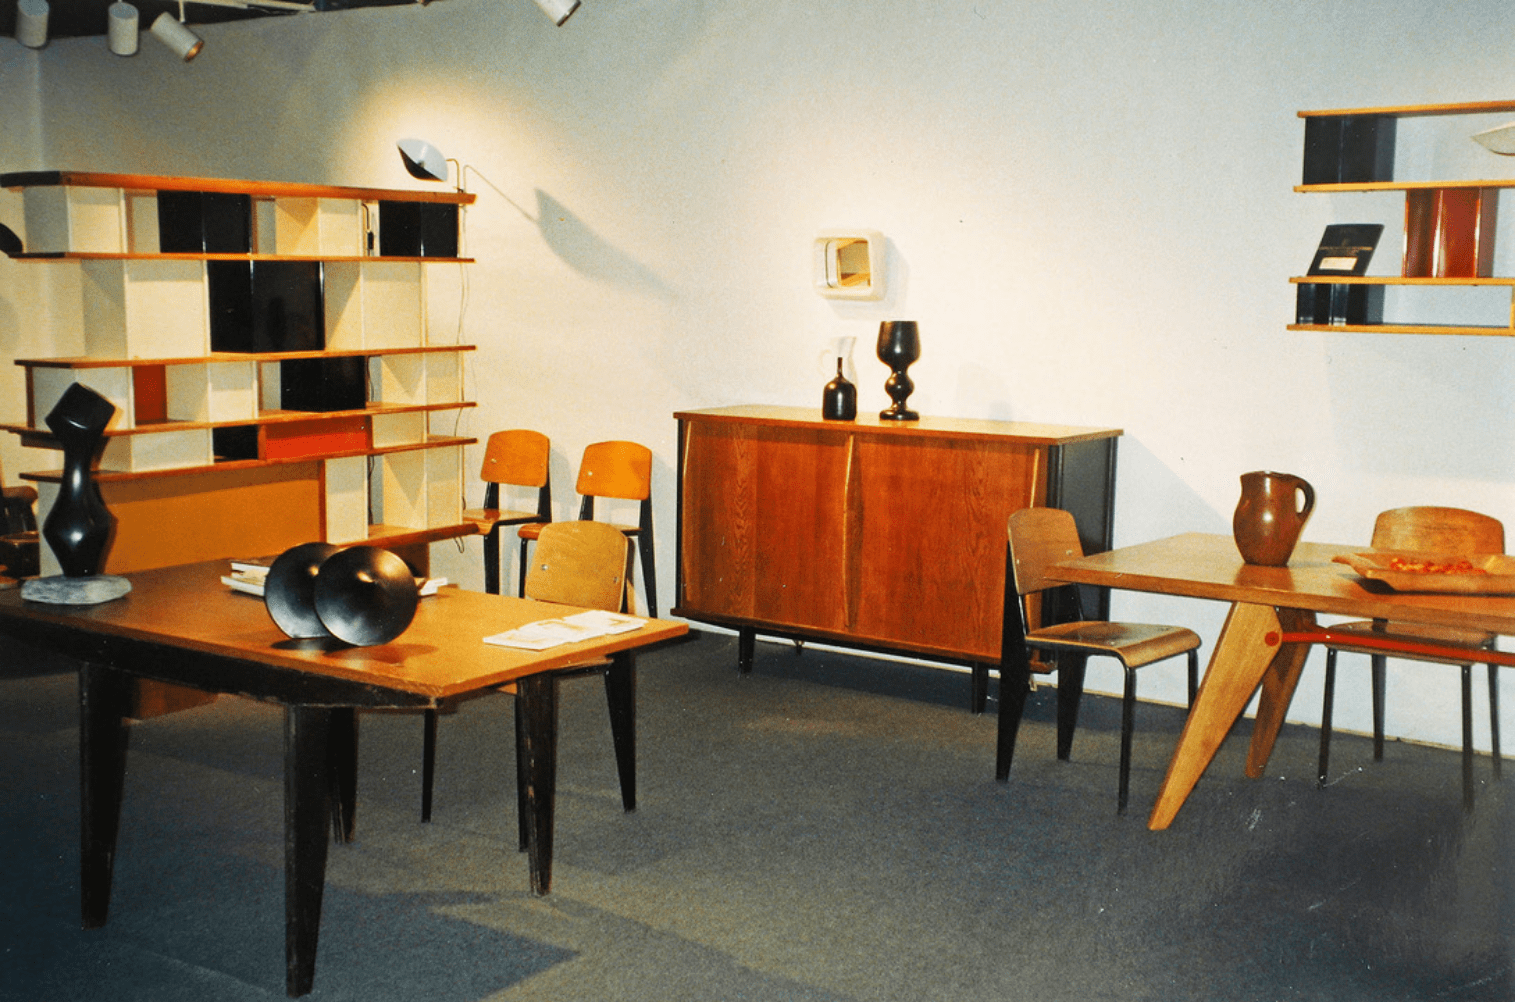 Galerie de Beyrie : Modernism Show, Park Avenue Armory, New York, 1995